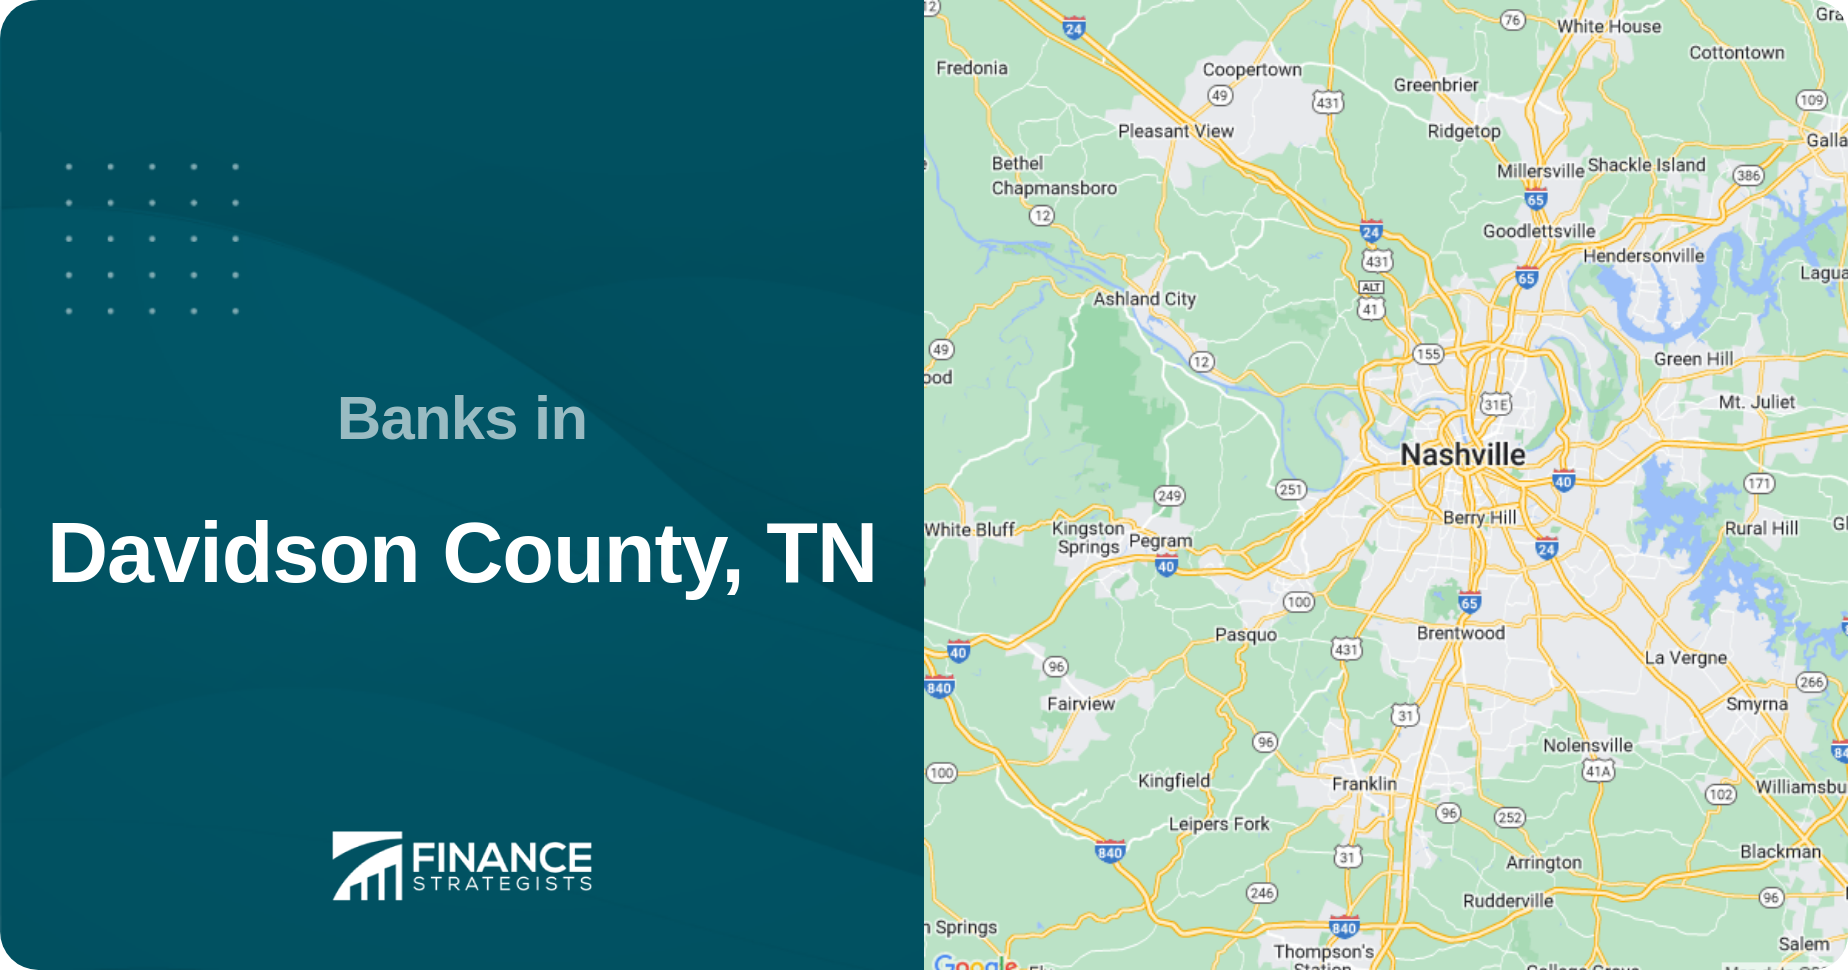 Banks in Davidson County, TN